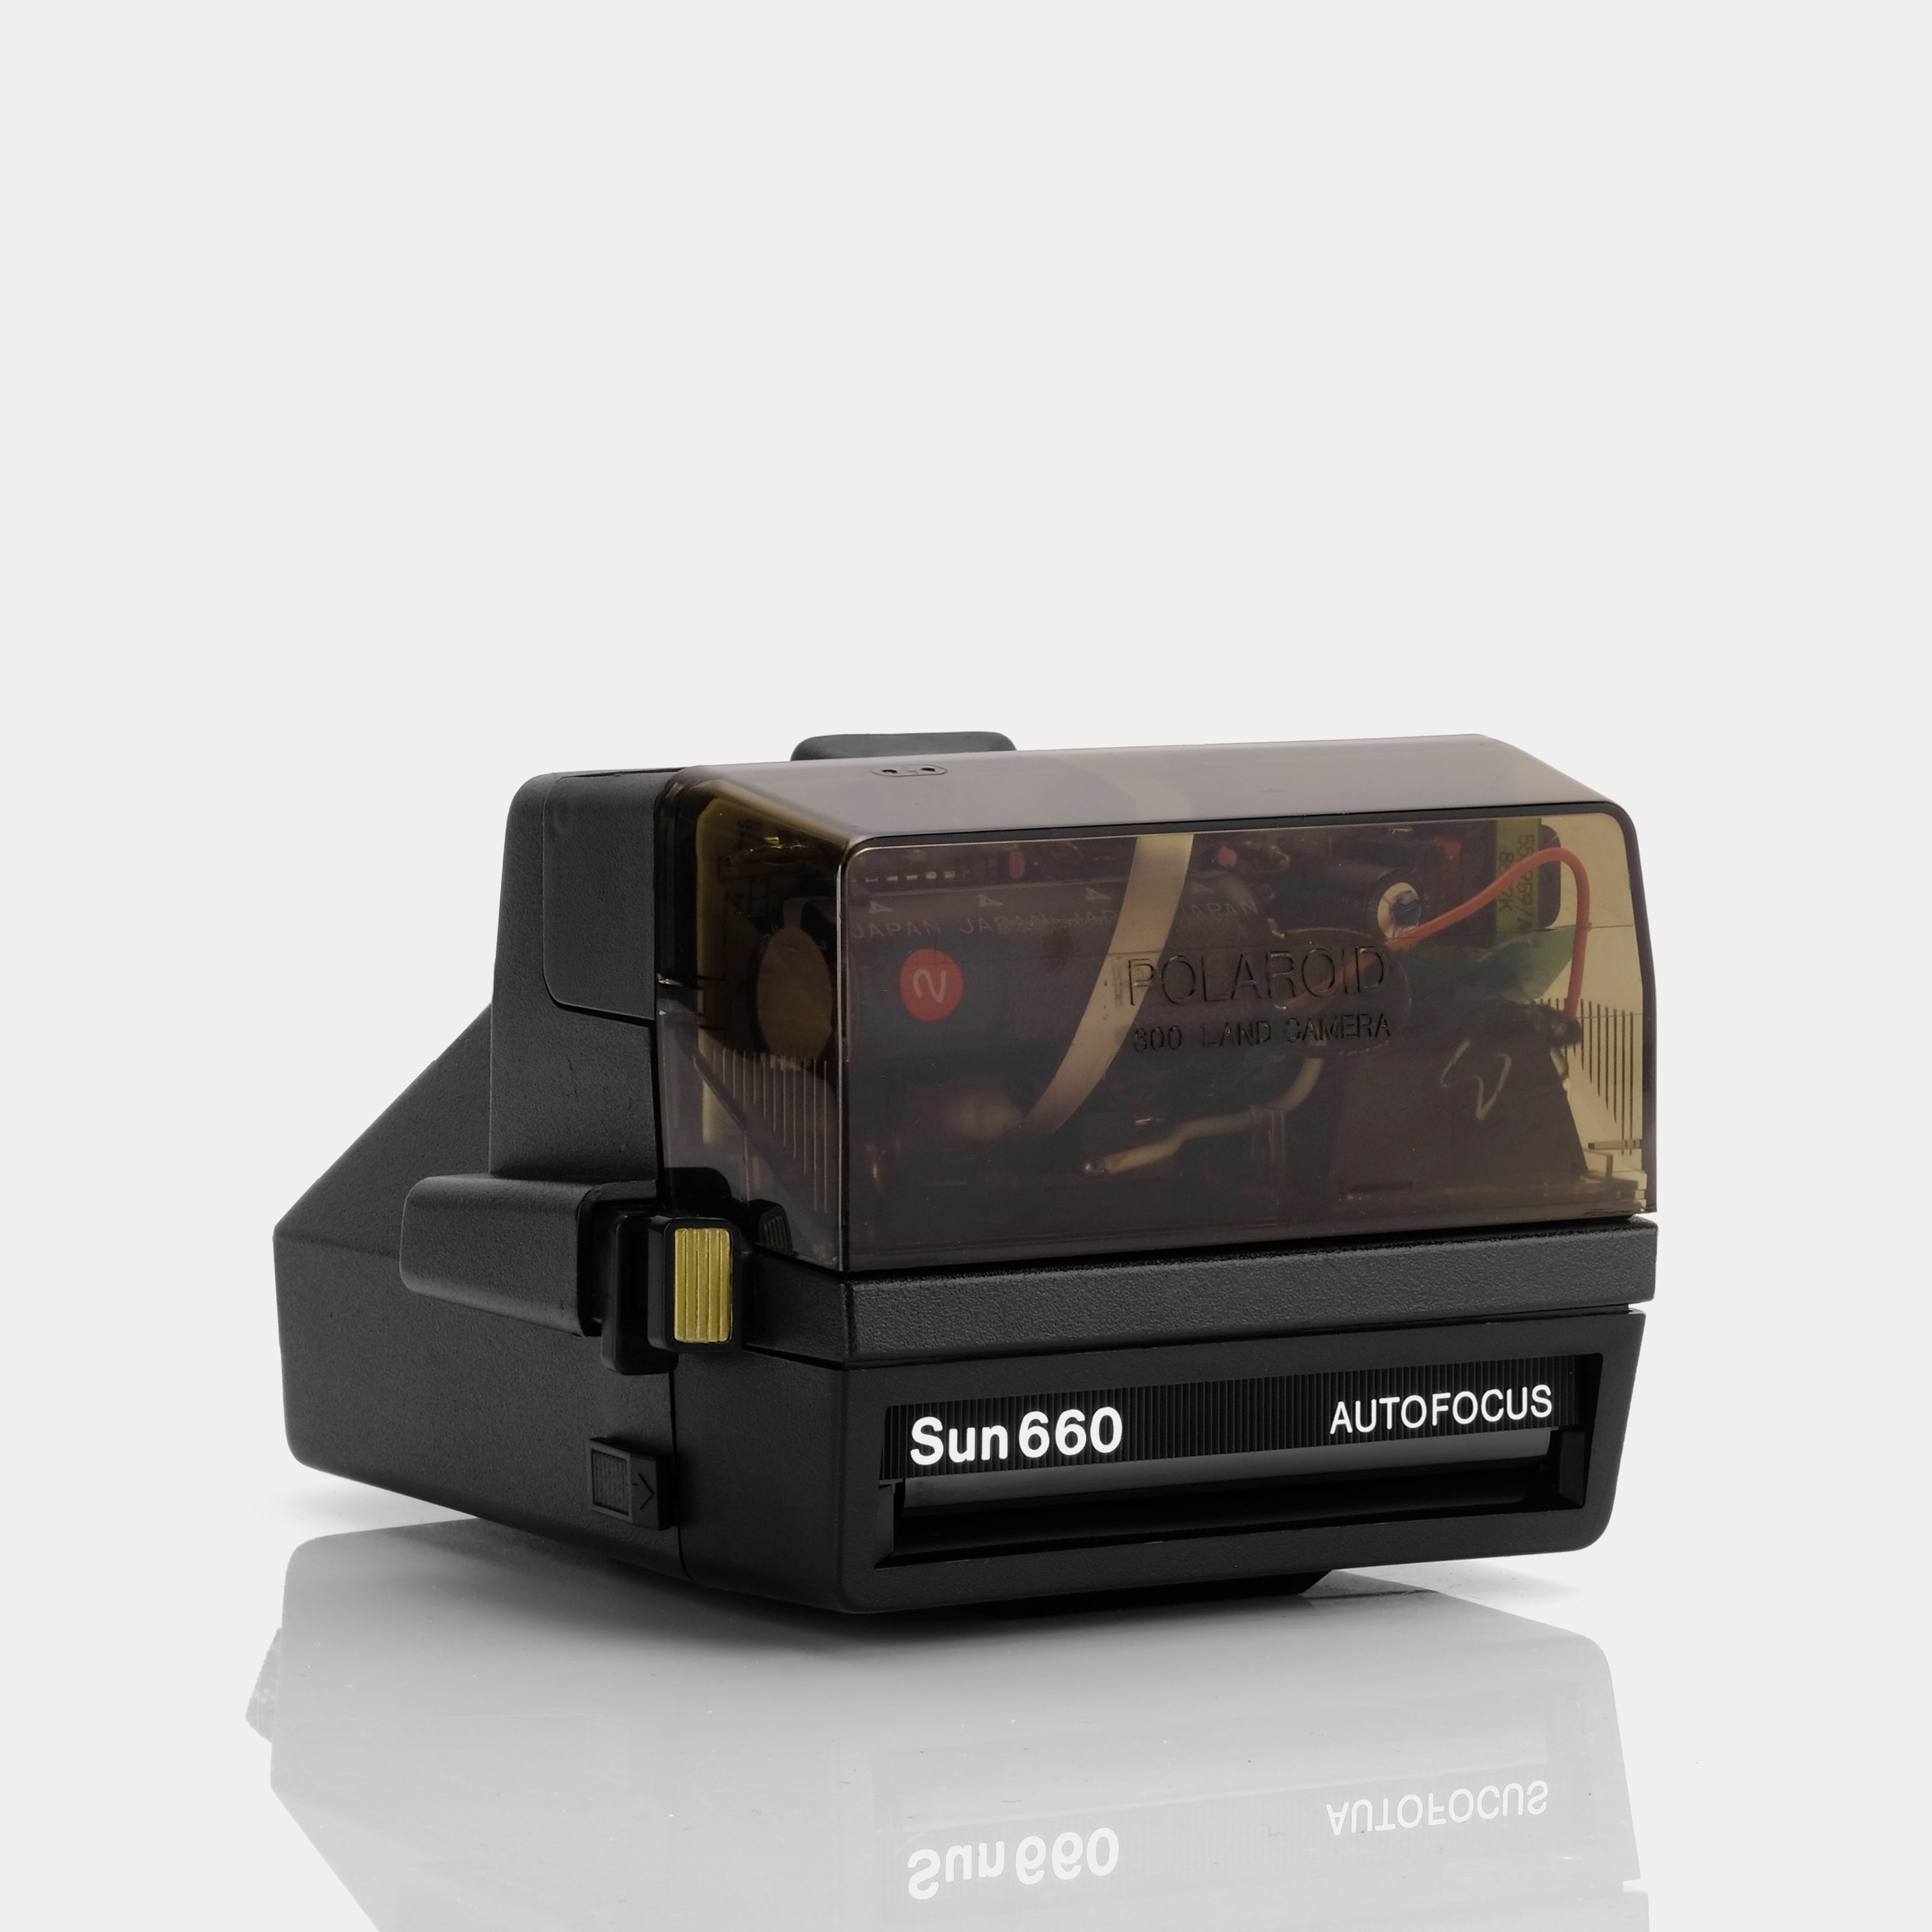 Polaroid 600 Supercolor Elite Instant Film Camera